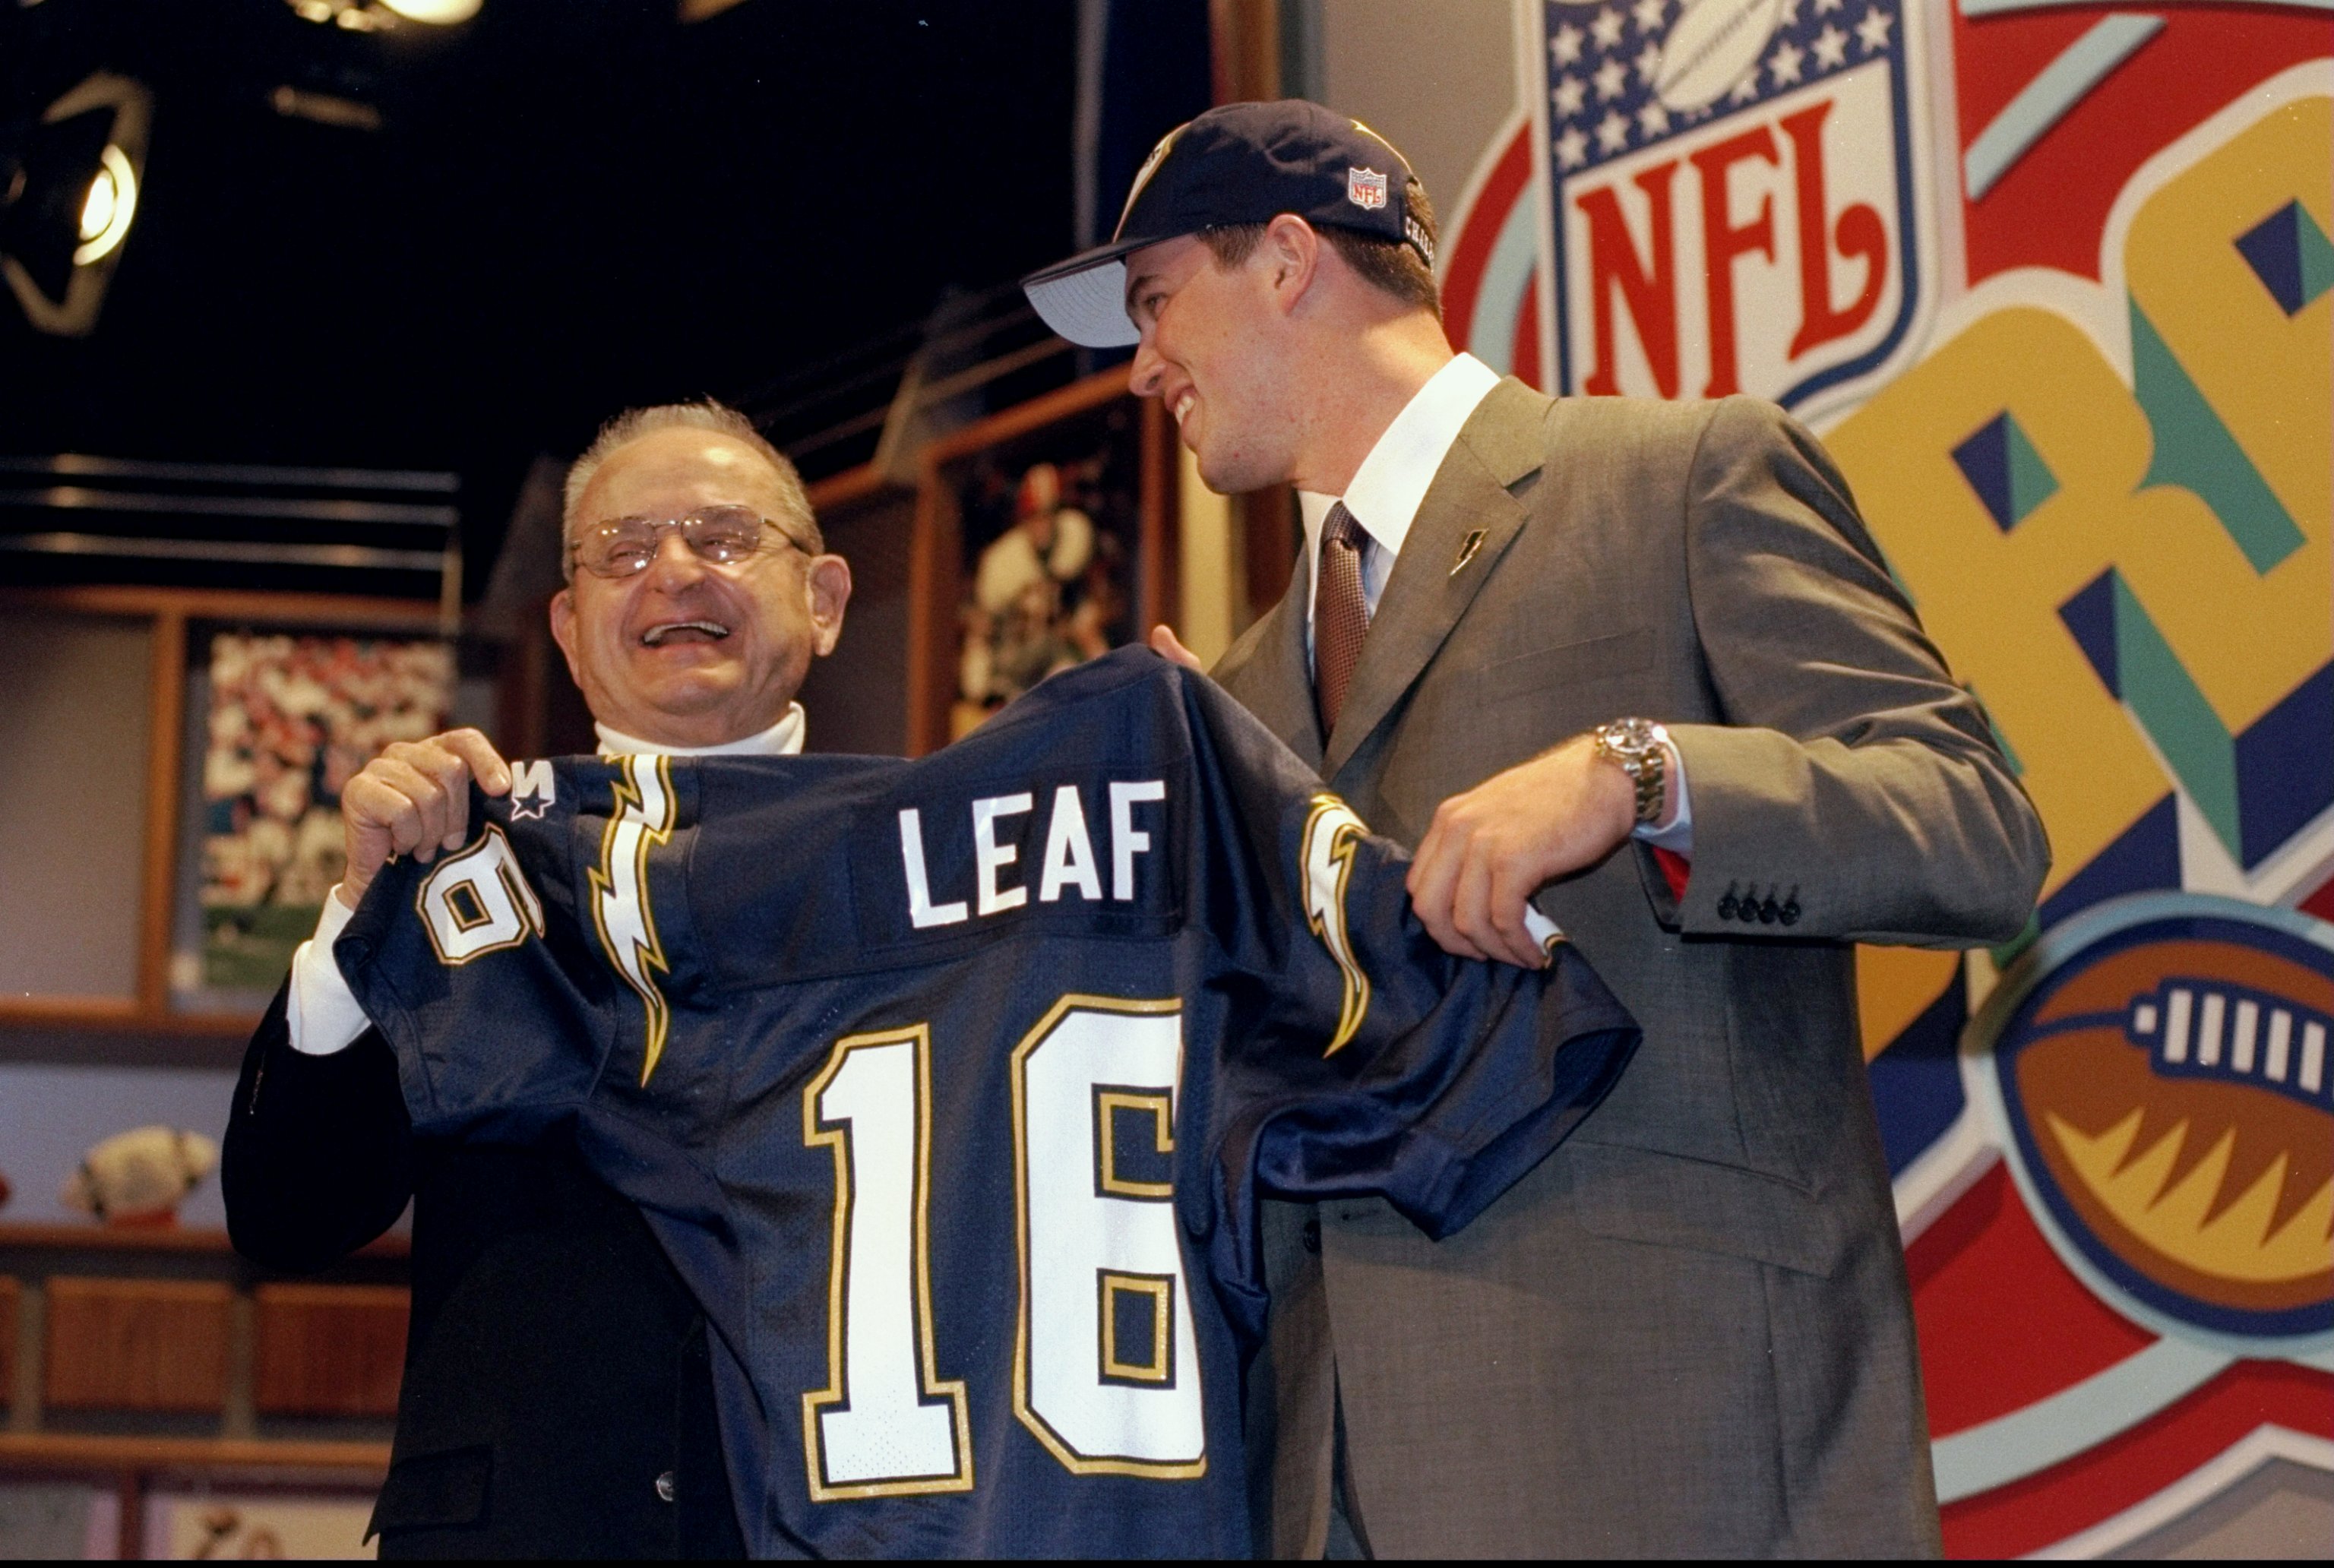 Ryan Leaf: #1 NFL Draft Bust